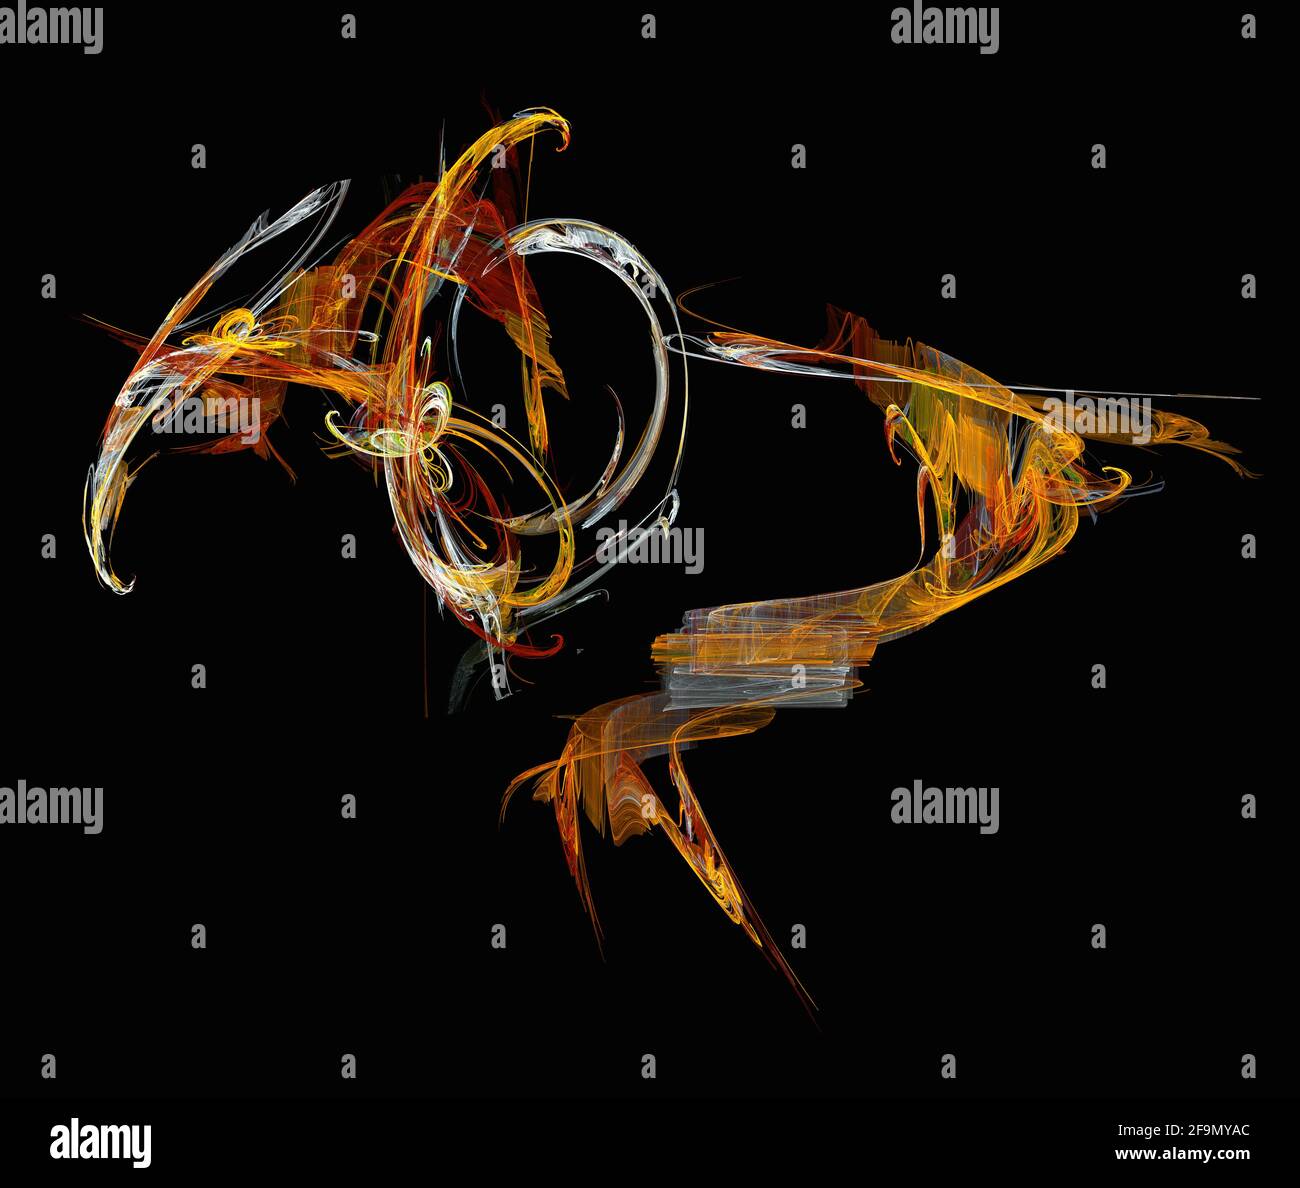 Immagine astratta della fiamma frattale, ribbola un uccello come una creatura Foto Stock